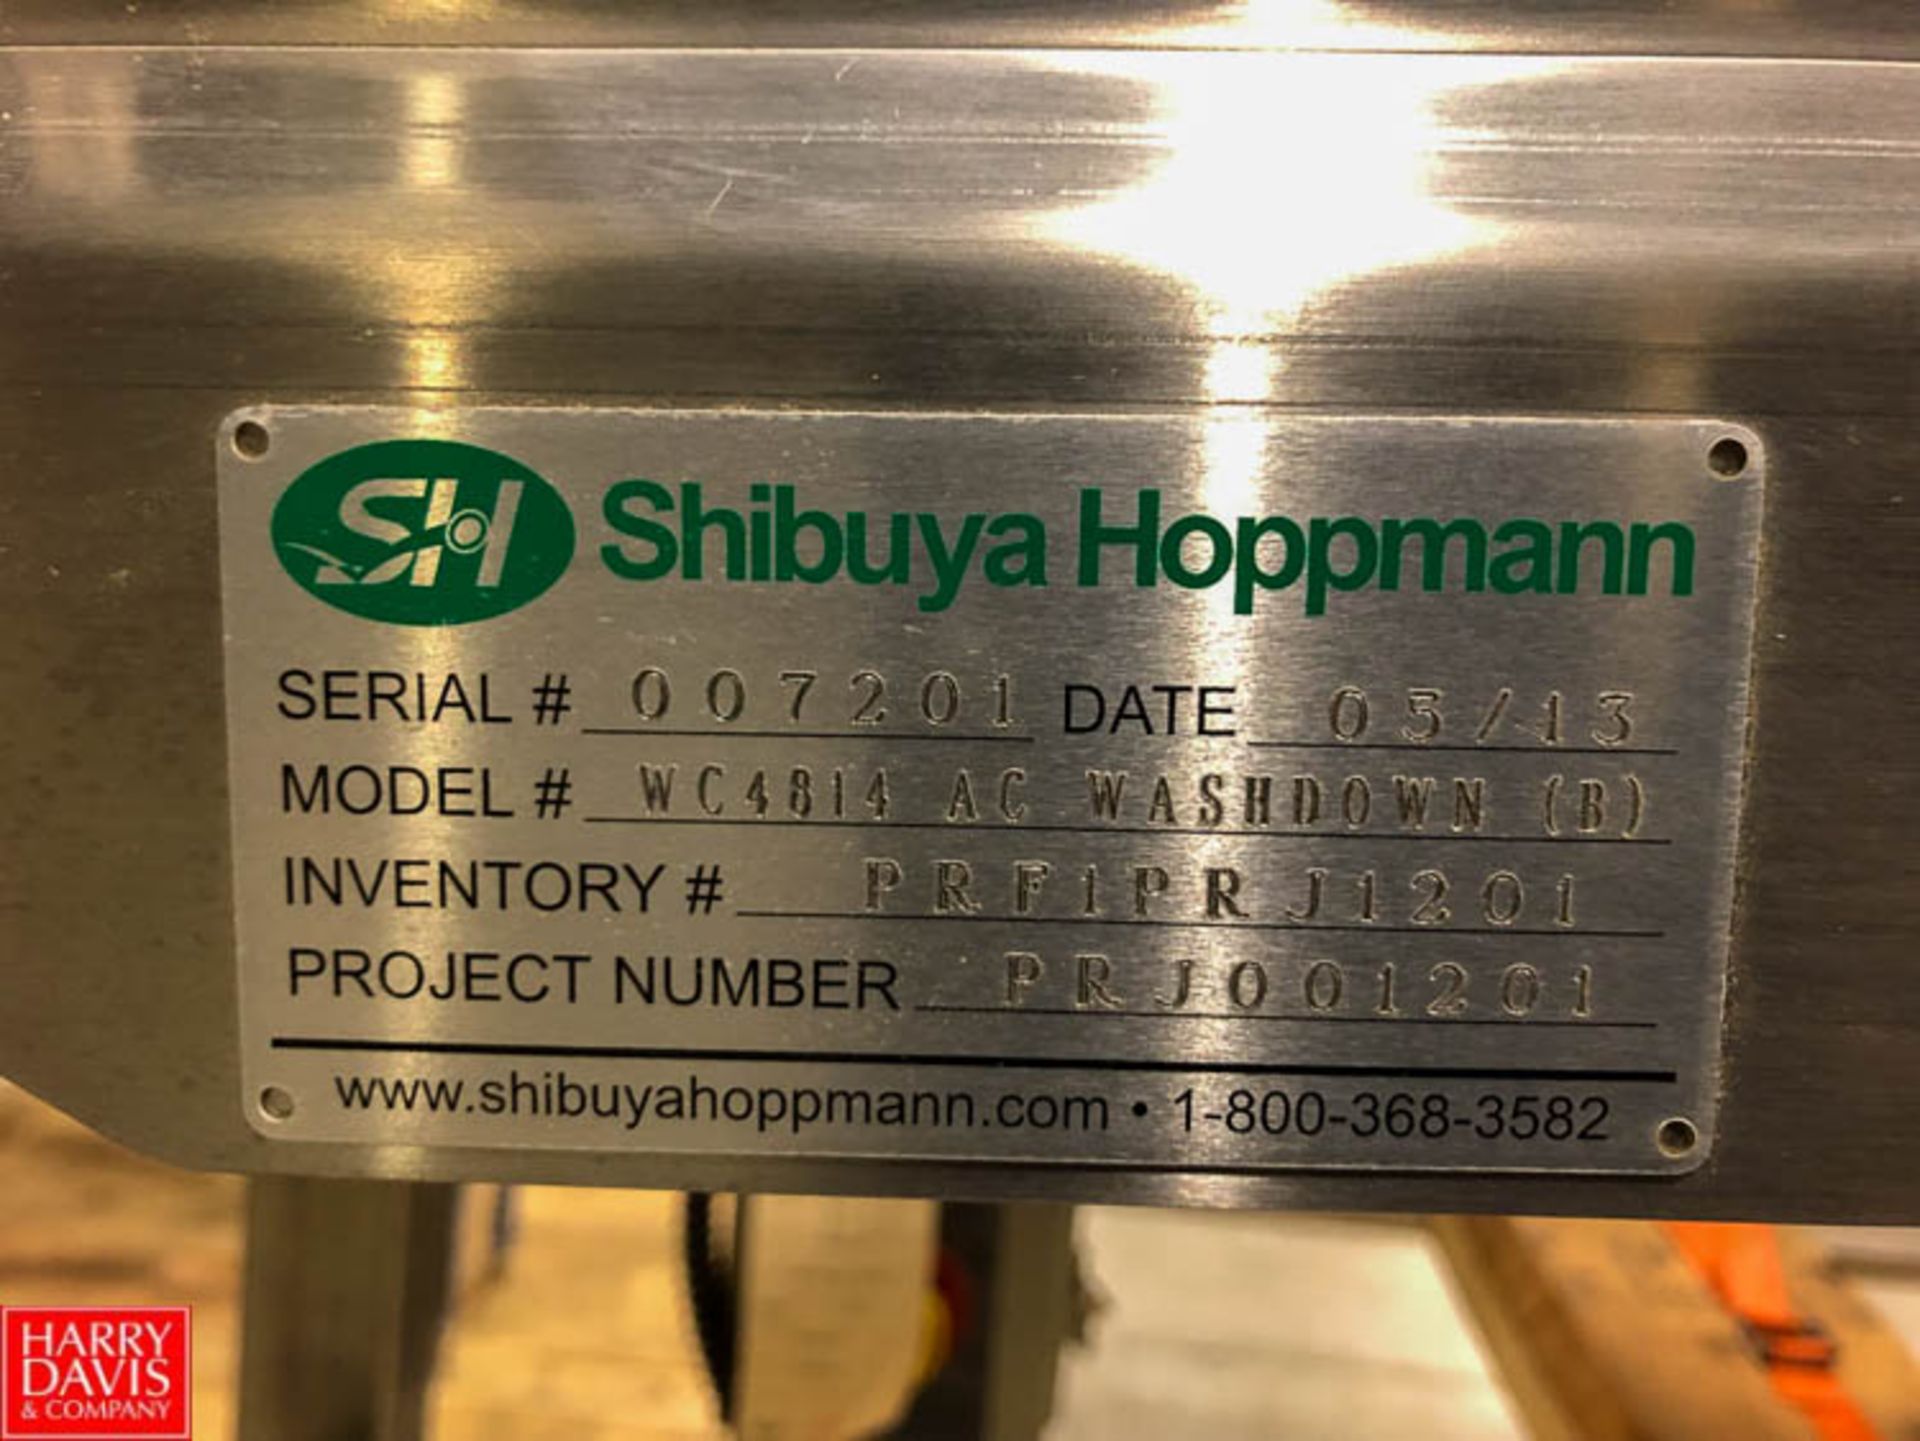 Shibuya Hoppmann Wash Down Conveyor, Model WC4814 AC, S/N 007201 Rigging Fee: $150 - Image 4 of 4